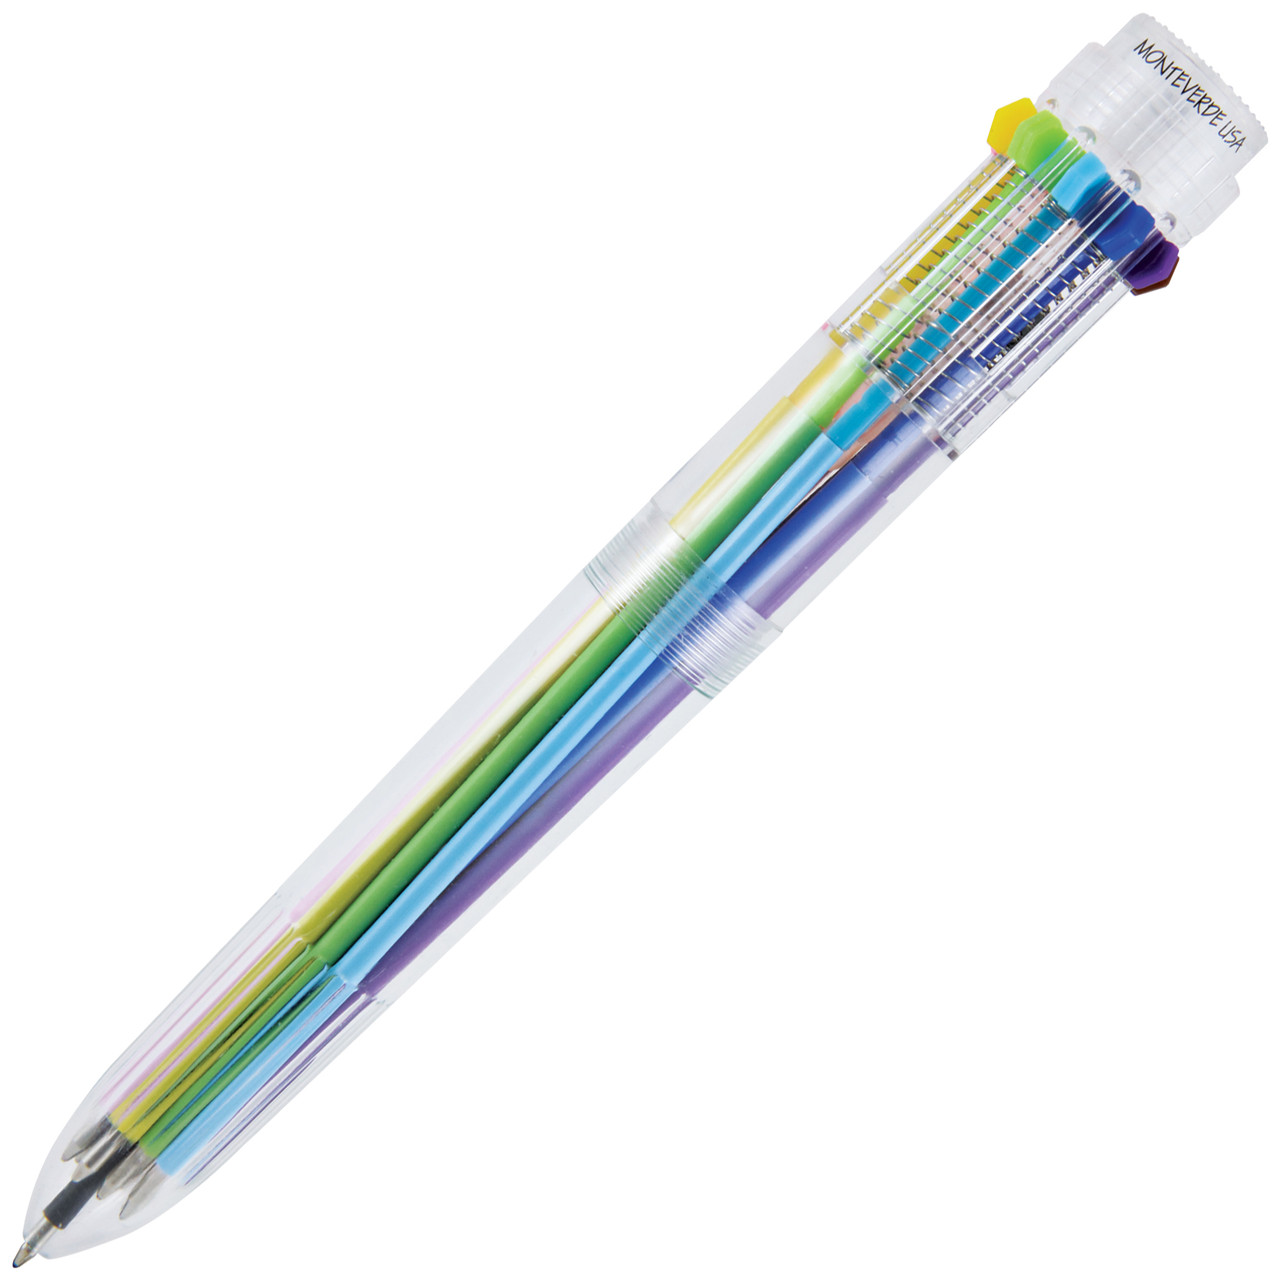 Shuttle Art Watercolor Cook Pen Pen 56 Color Set Aqueous Pen Color Pen Twin  Mark